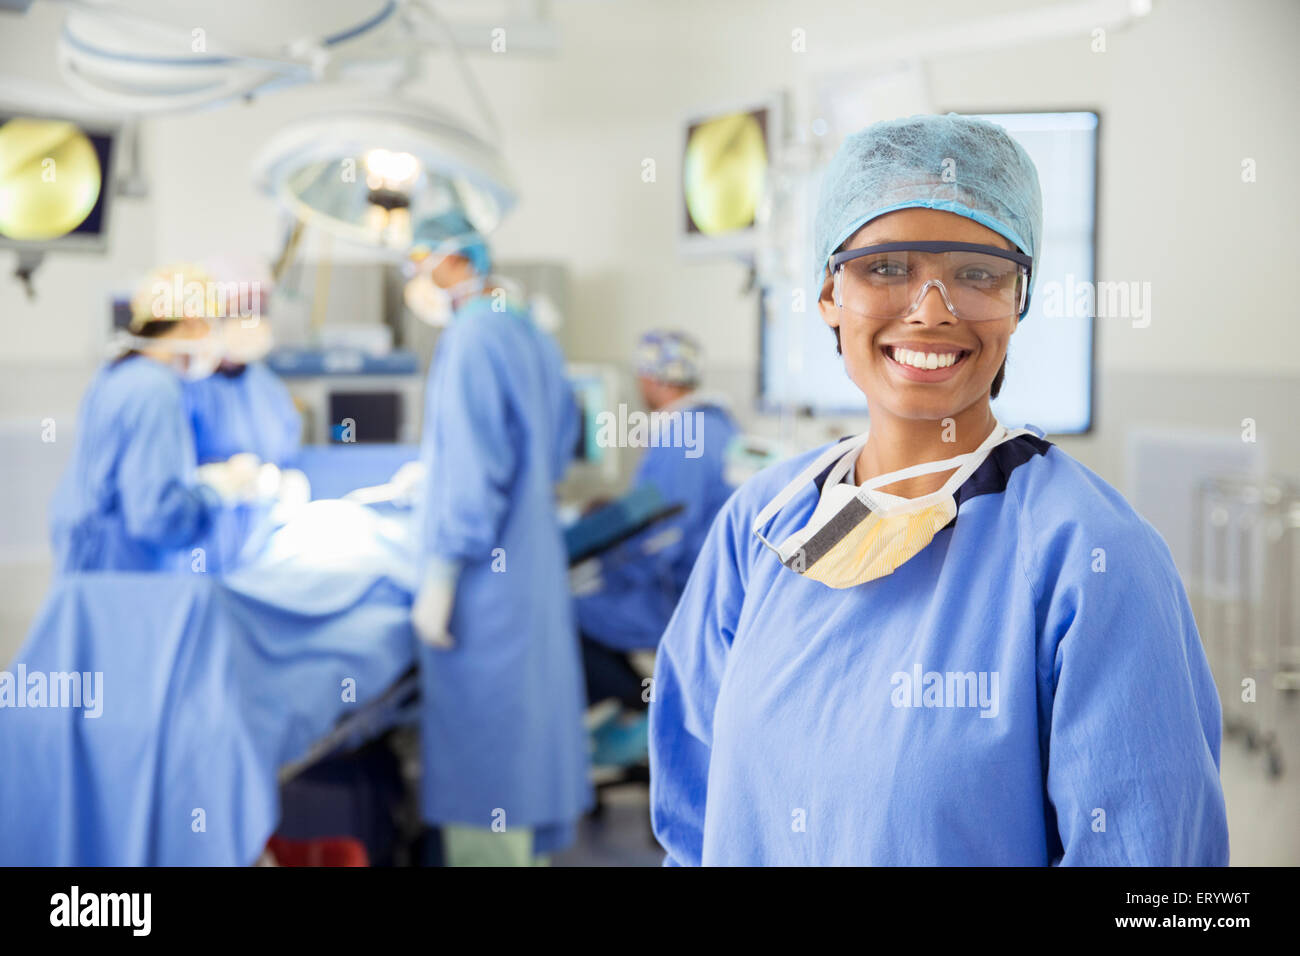 Porträt des lächelnden Chirurgen im OP-Saal Stockfoto